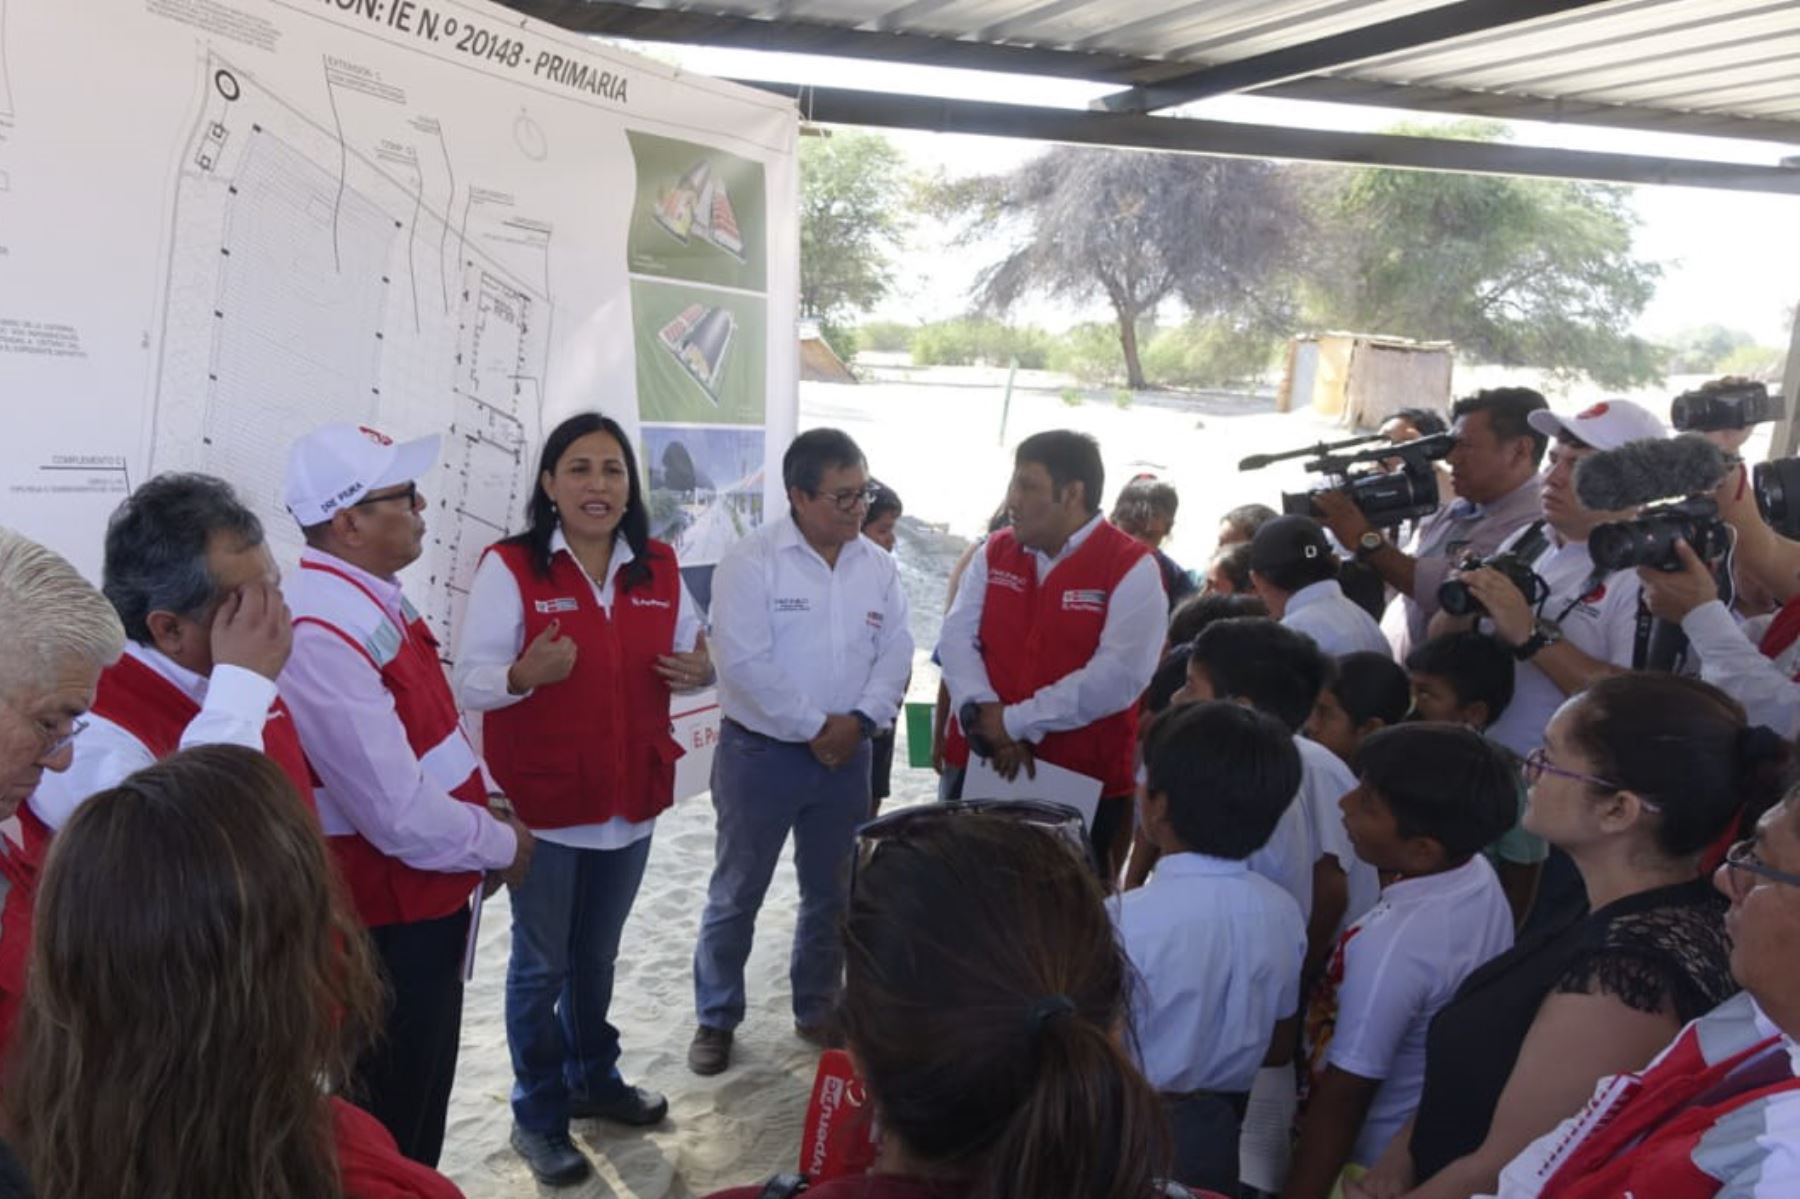 La ministra de Educación, Flor Pablo Medina, anunció la inversión de 233 millones de soles para la reconstrucción de 58 colegios en la región Piura, que beneficiará a 5994 estudiantes.